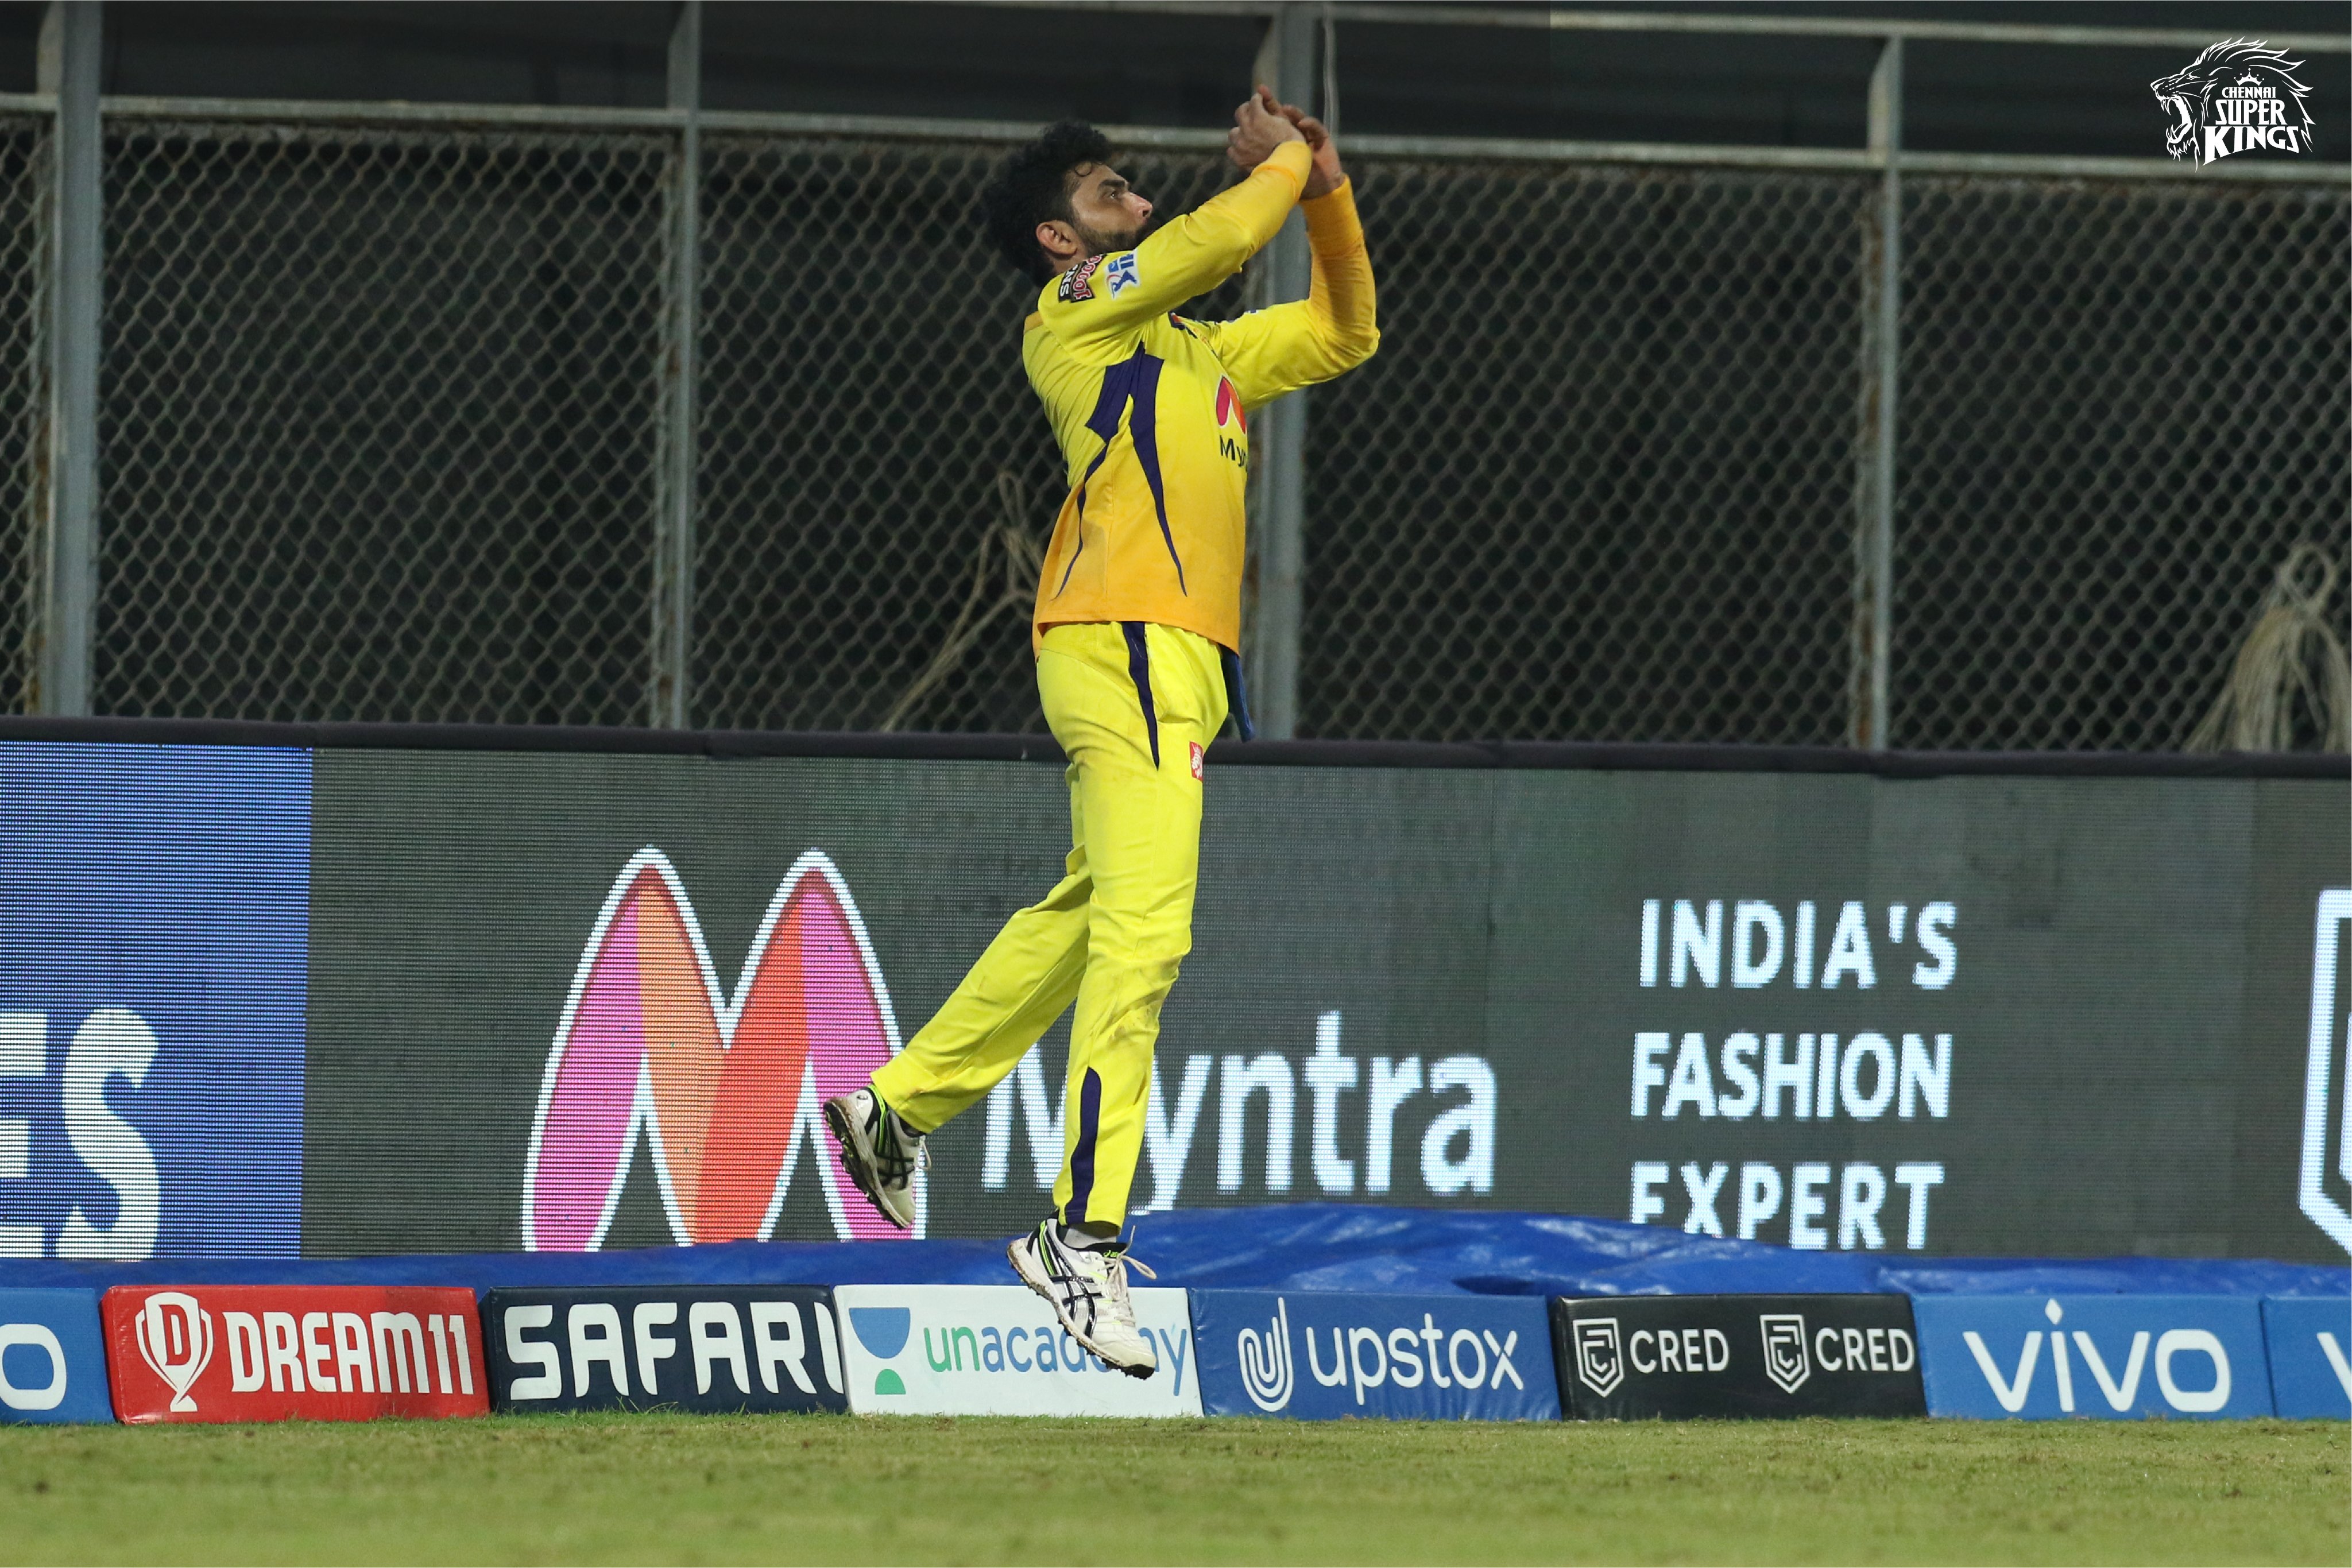 IPL 2021: Jadeja’s celebration after taking 4 catches goes viral